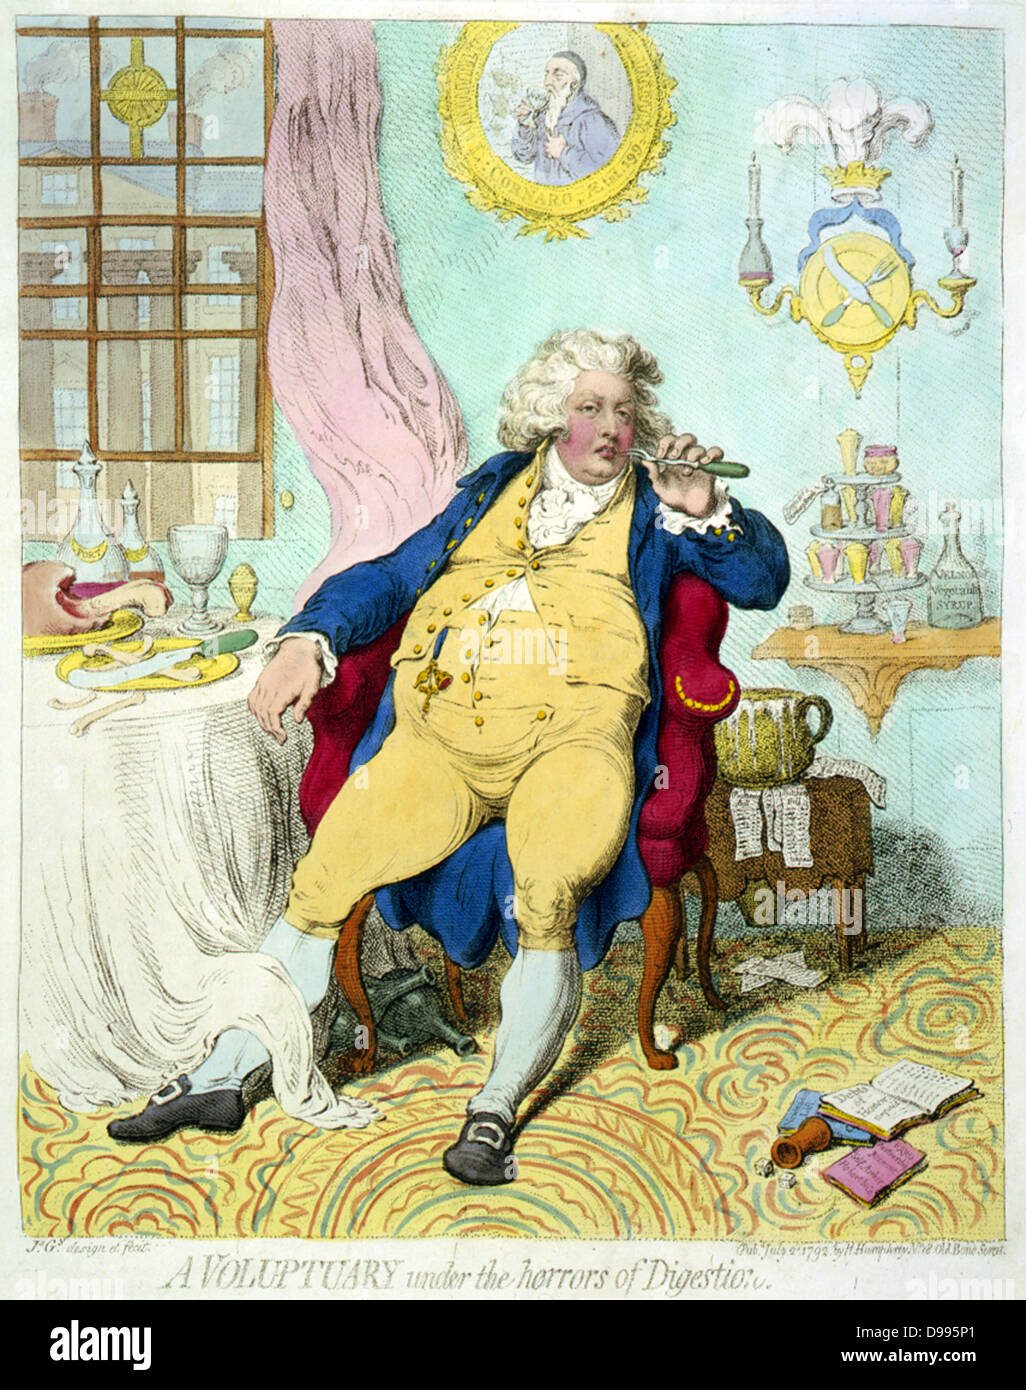 Ein voluptuary unter dem Schrecken der Verdauung: Karikatur von George IV, wie der Prinz von Wales, trägen mit Völlegefühl, zurückgelehnt in einem Sessel, an einem Tisch mit Resten der Mahlzeit, mit einer Gabel zum Mund. 1800 Stockfoto